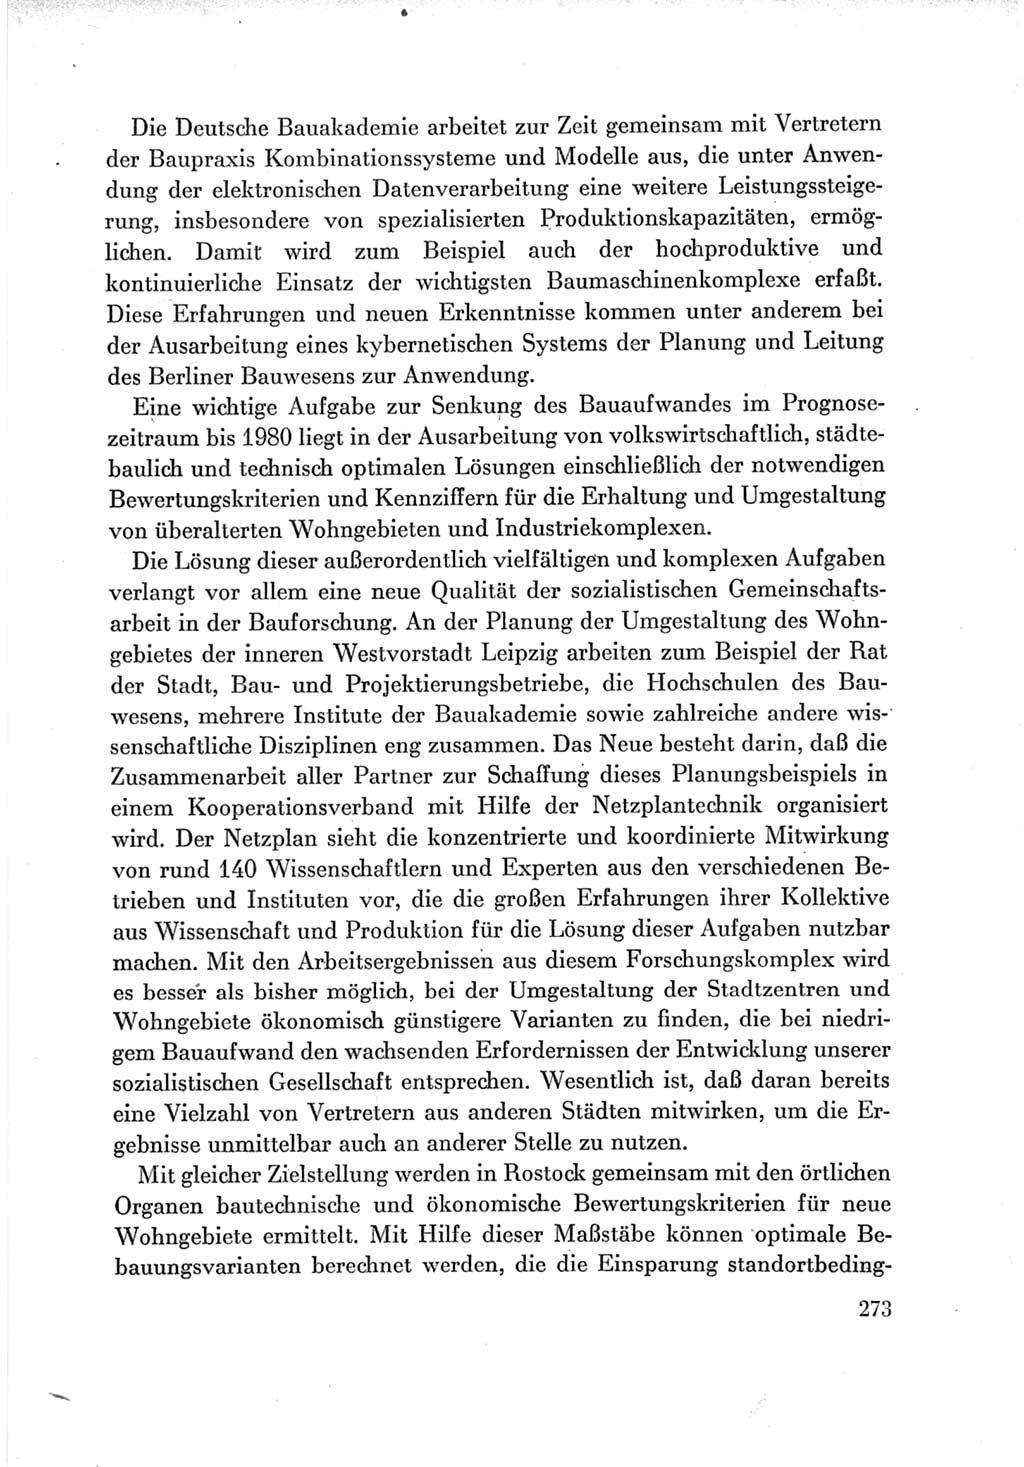 Protokoll der Verhandlungen des Ⅶ. Parteitages der Sozialistischen Einheitspartei Deutschlands (SED) [Deutsche Demokratische Republik (DDR)] 1967, Band Ⅲ, Seite 273 (Prot. Verh. Ⅶ. PT SED DDR 1967, Bd. Ⅲ, S. 273)